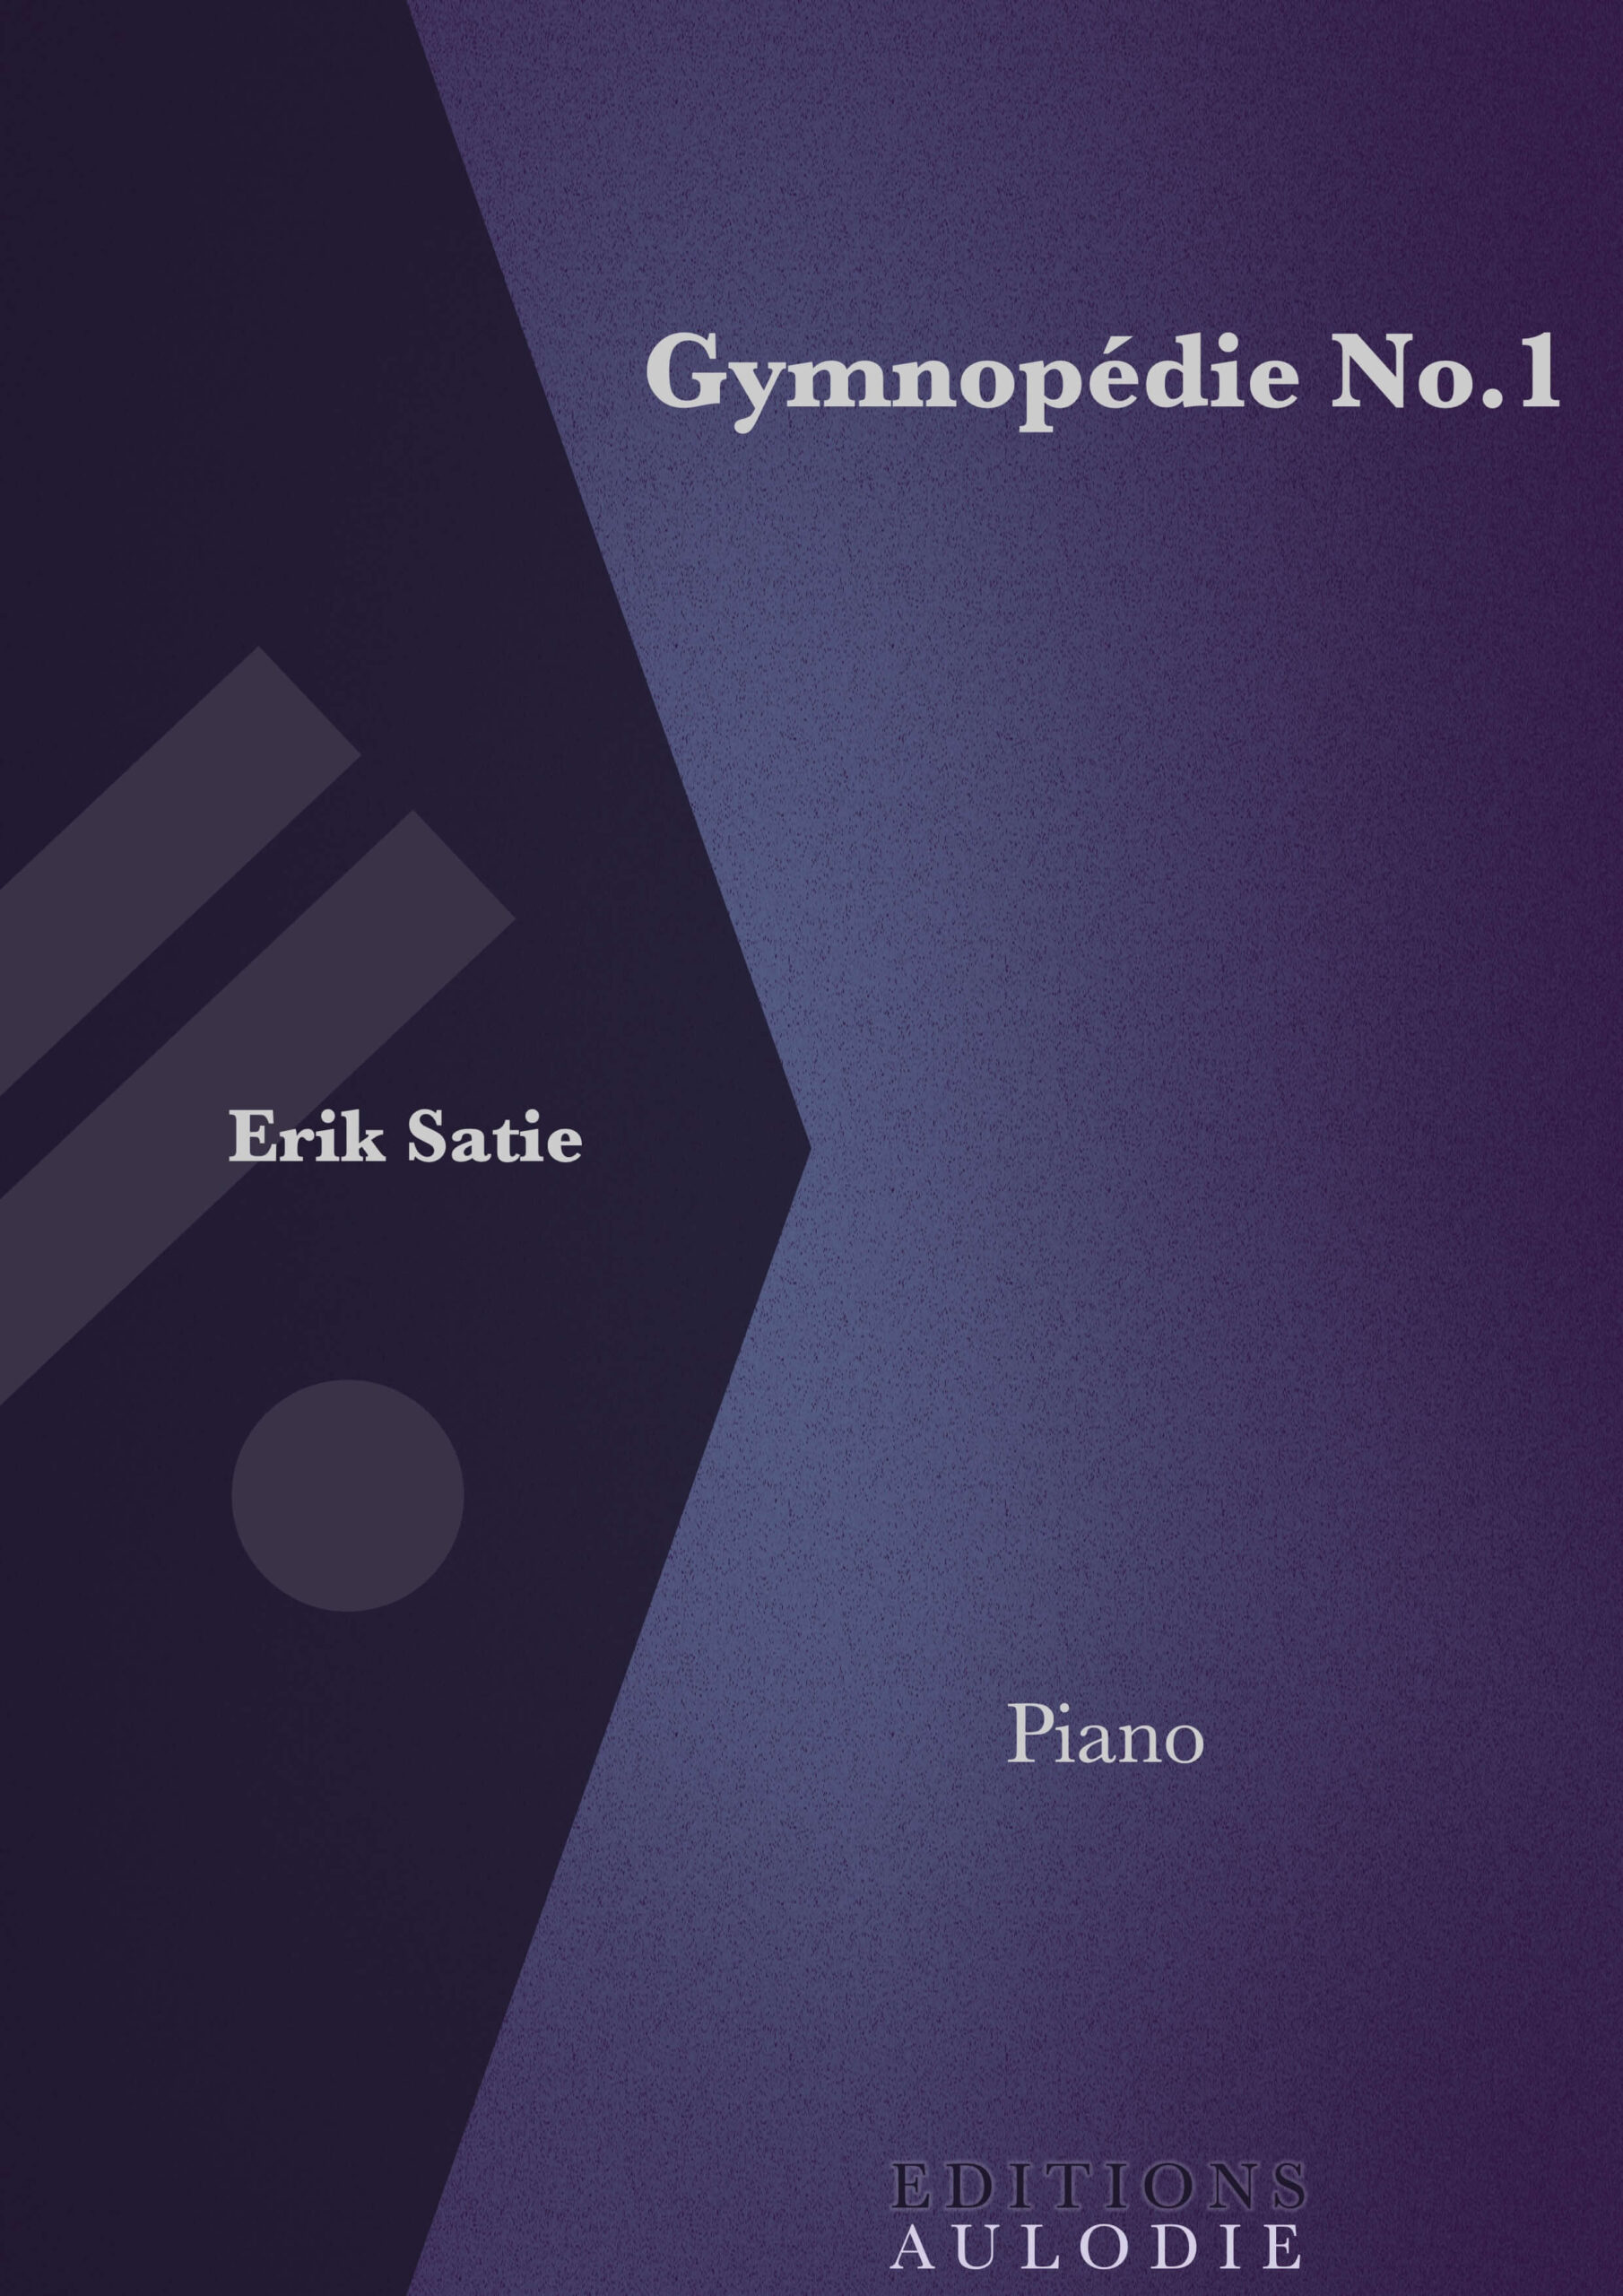 EA01042-Gymnopedie_No1-Erik_Satie-Solo